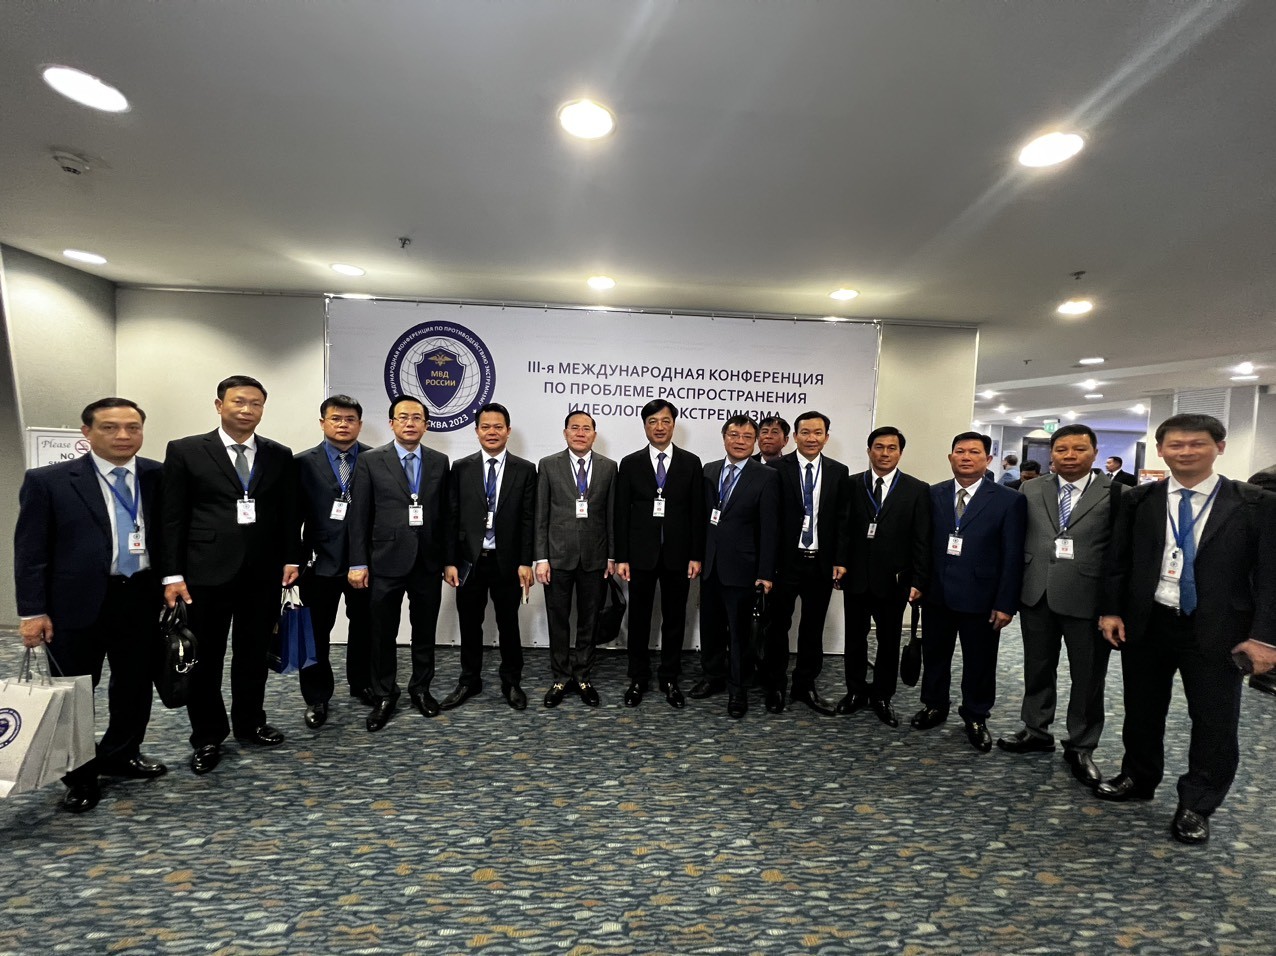 Đoàn đại biểu cấp cao Bộ Công an Việt Nam dự Hội nghị quốc tế lần thứ III về phòng, chống truyền bá tư tưởng cực đoan.